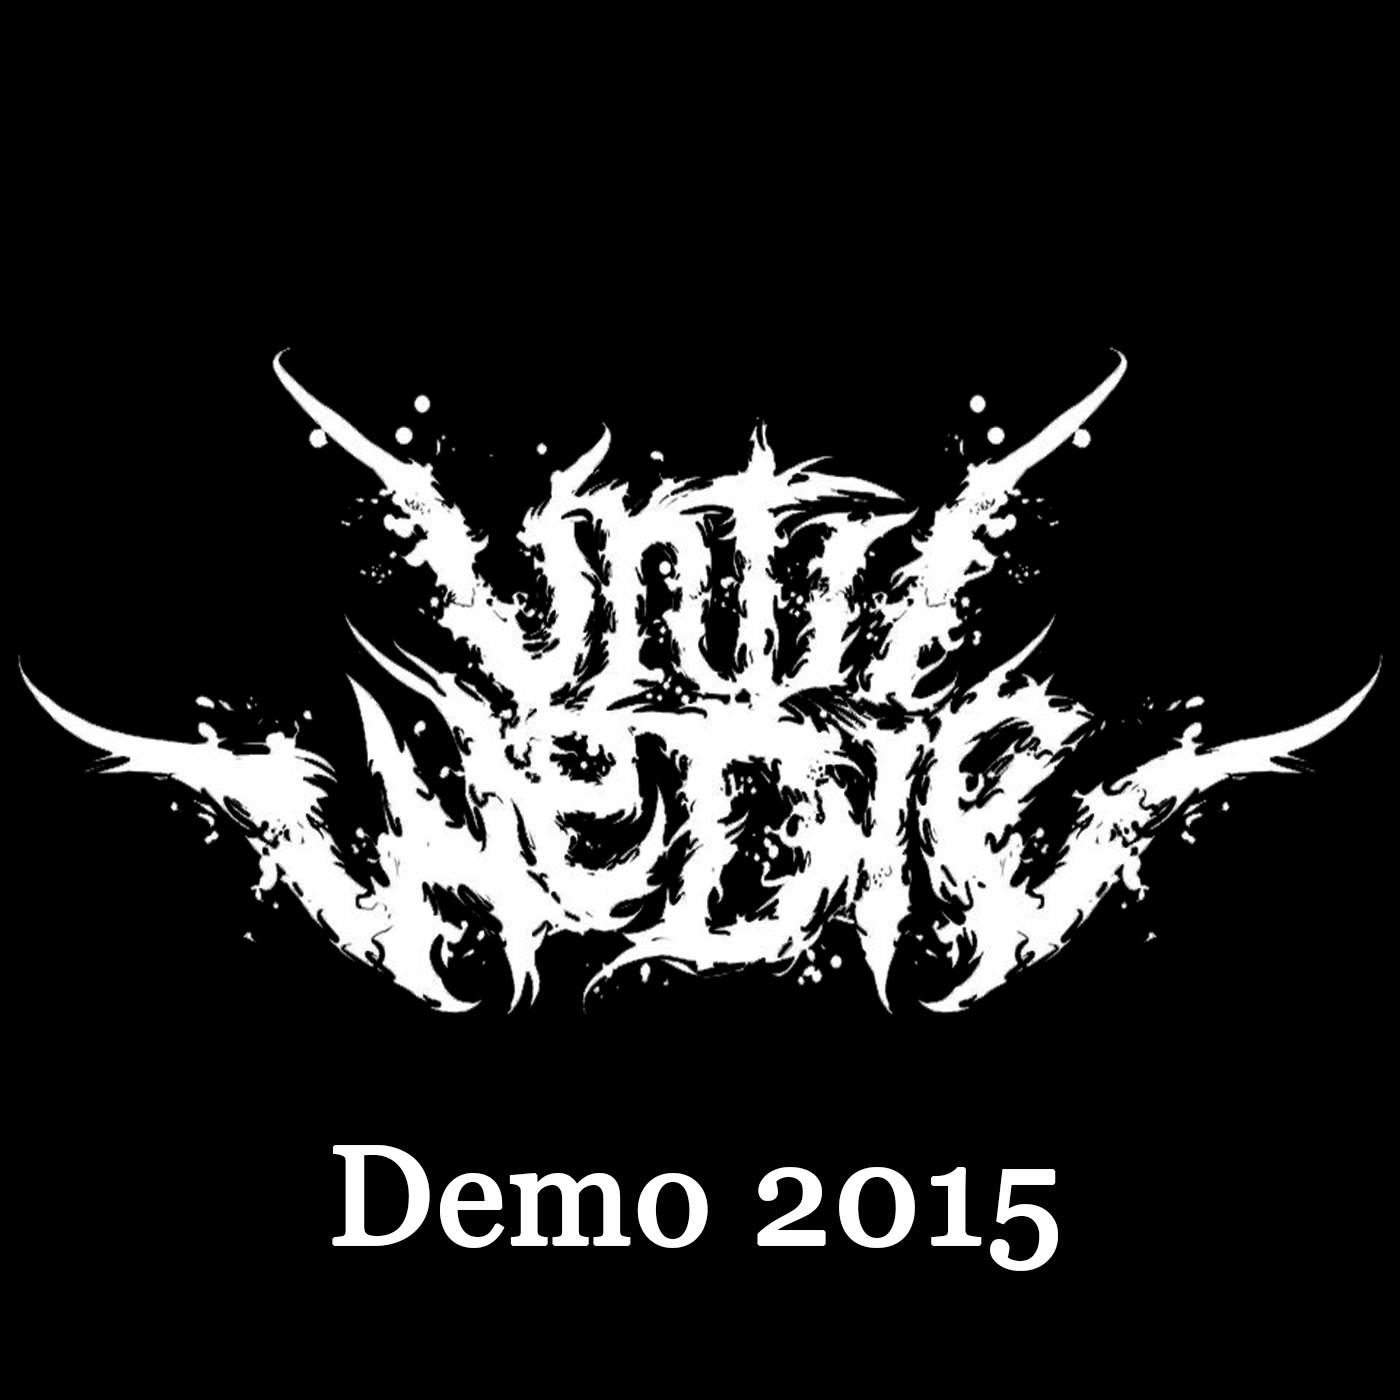 Die demo. Until we die. Until we die Band. Until we die релиз. Until we die арт.